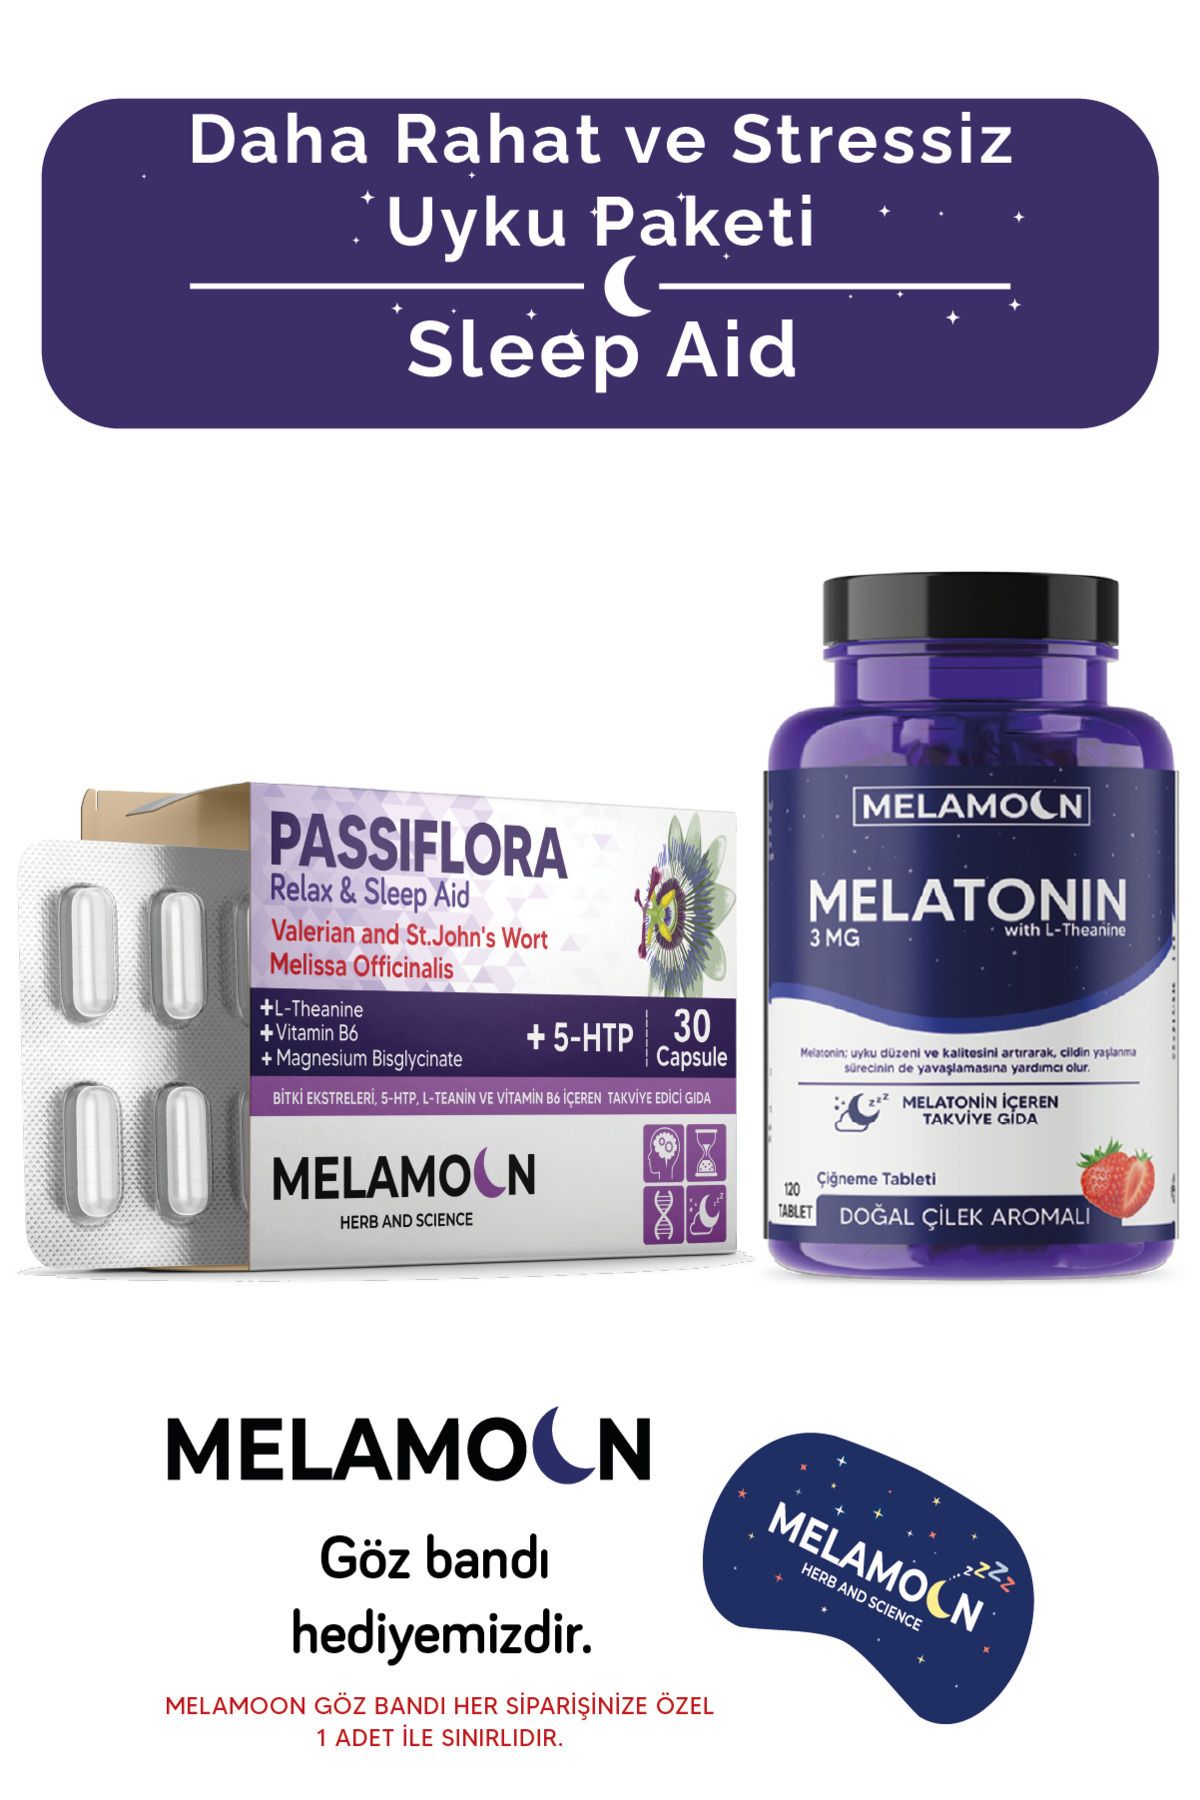 Melamoon Melatonin 3 Mg Ve Pasiflora 5 Htp Ve Magnezyum-kaliteli Ve Stressiz Uyku Paketi